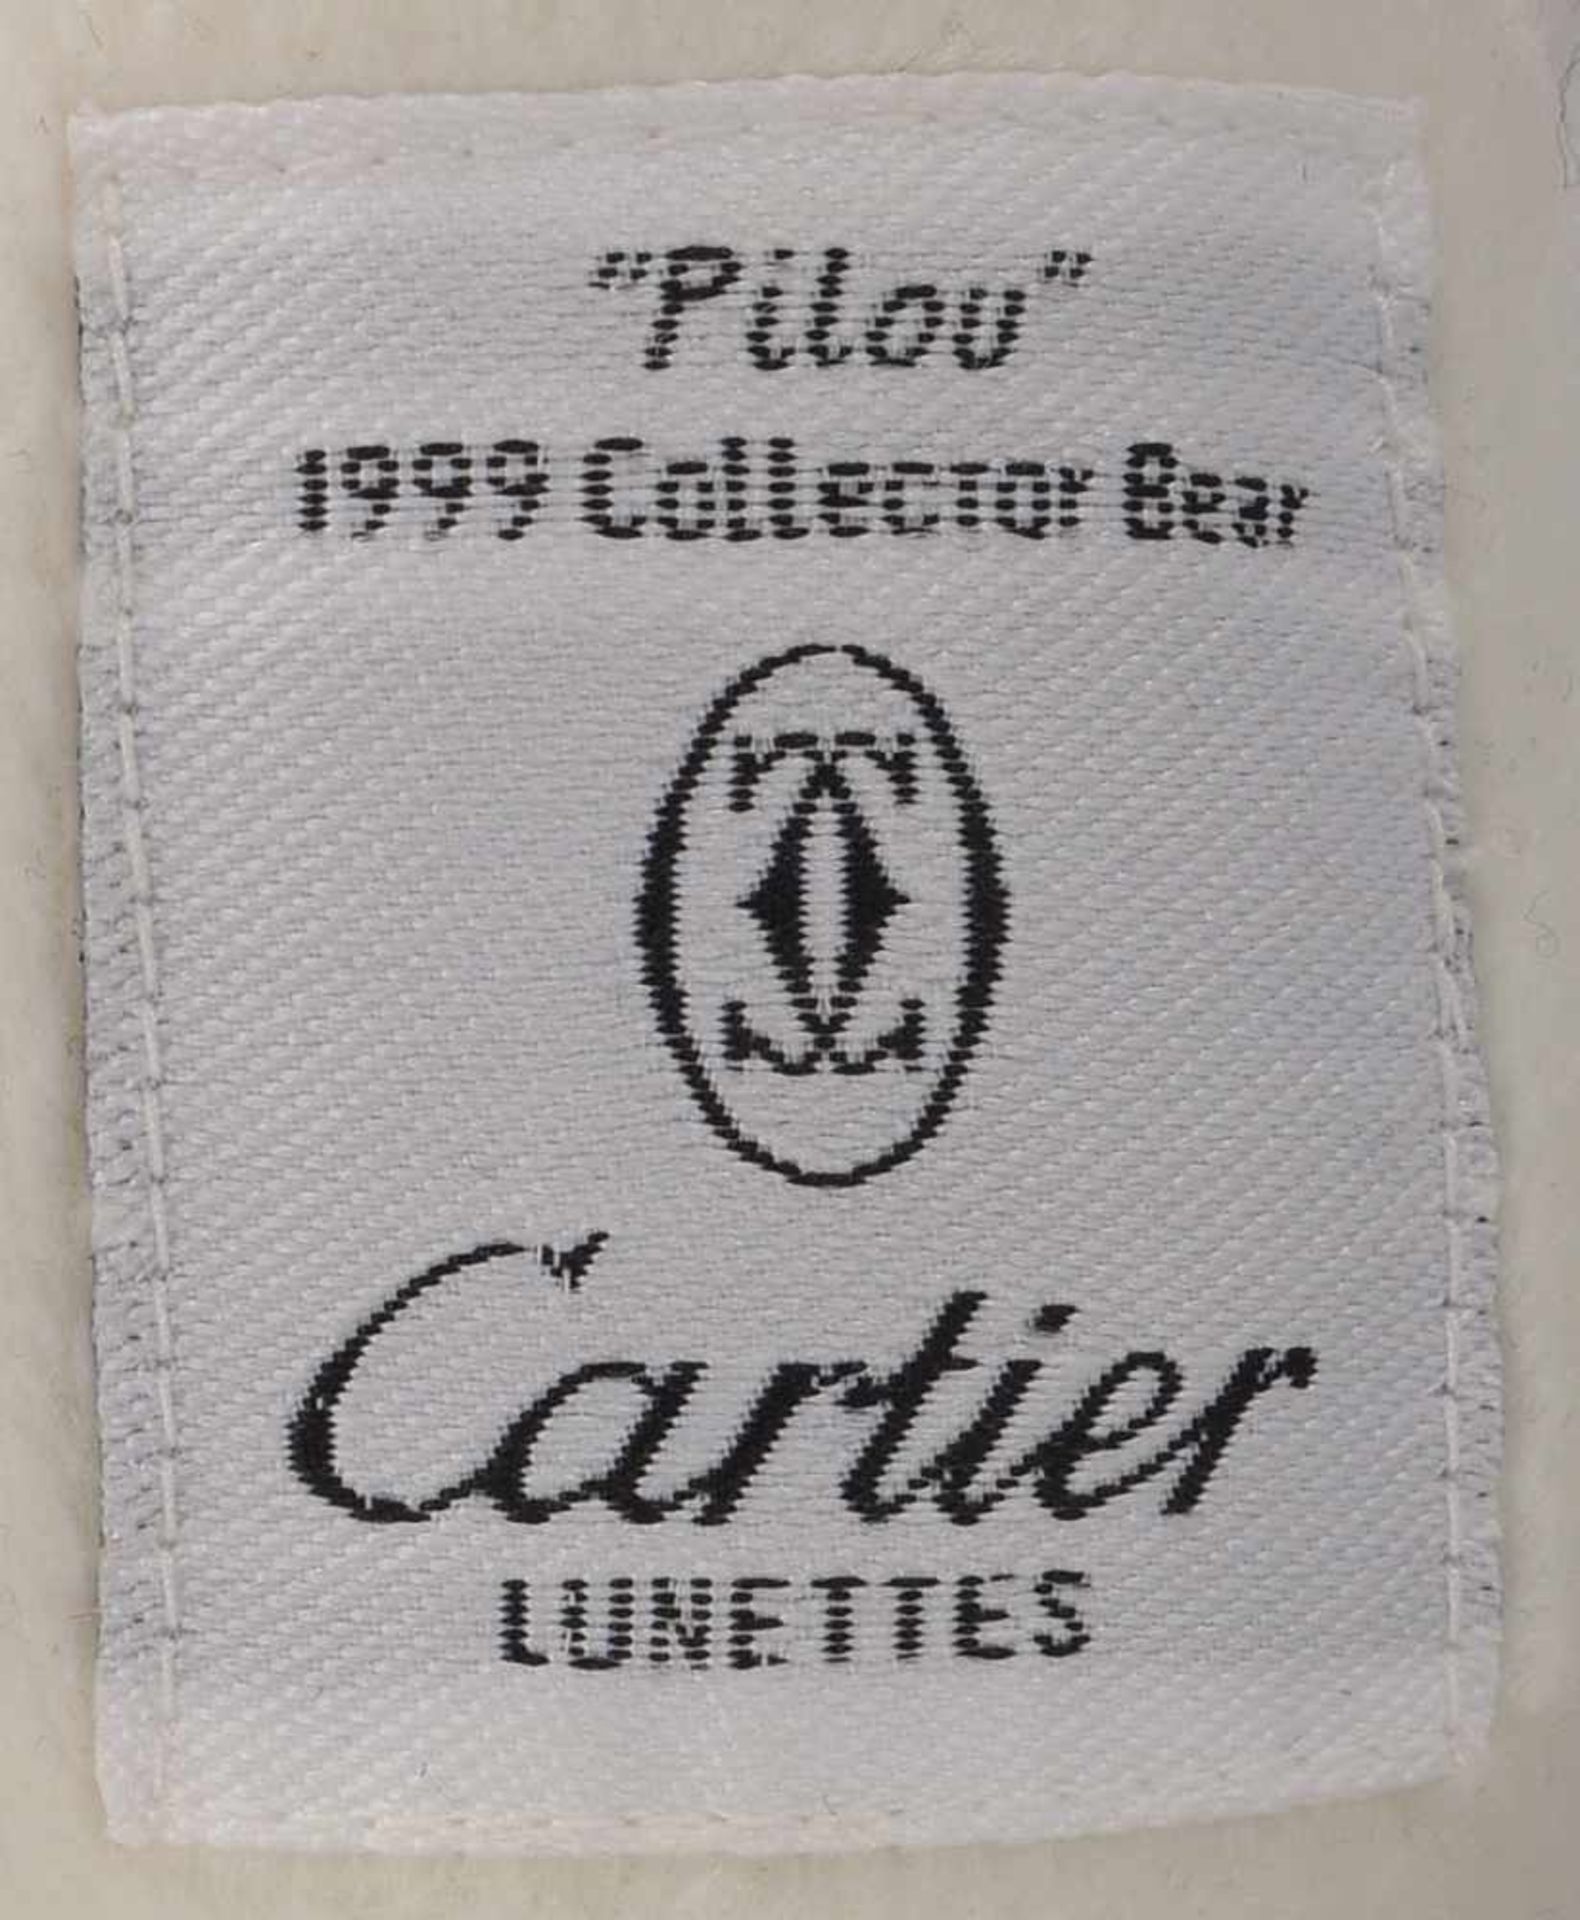 Sammler-Teddybär, Cartier, 'Pilou' (1999); Höhe 42 cm (mit Gebrauchsspuren) - Bild 2 aus 2